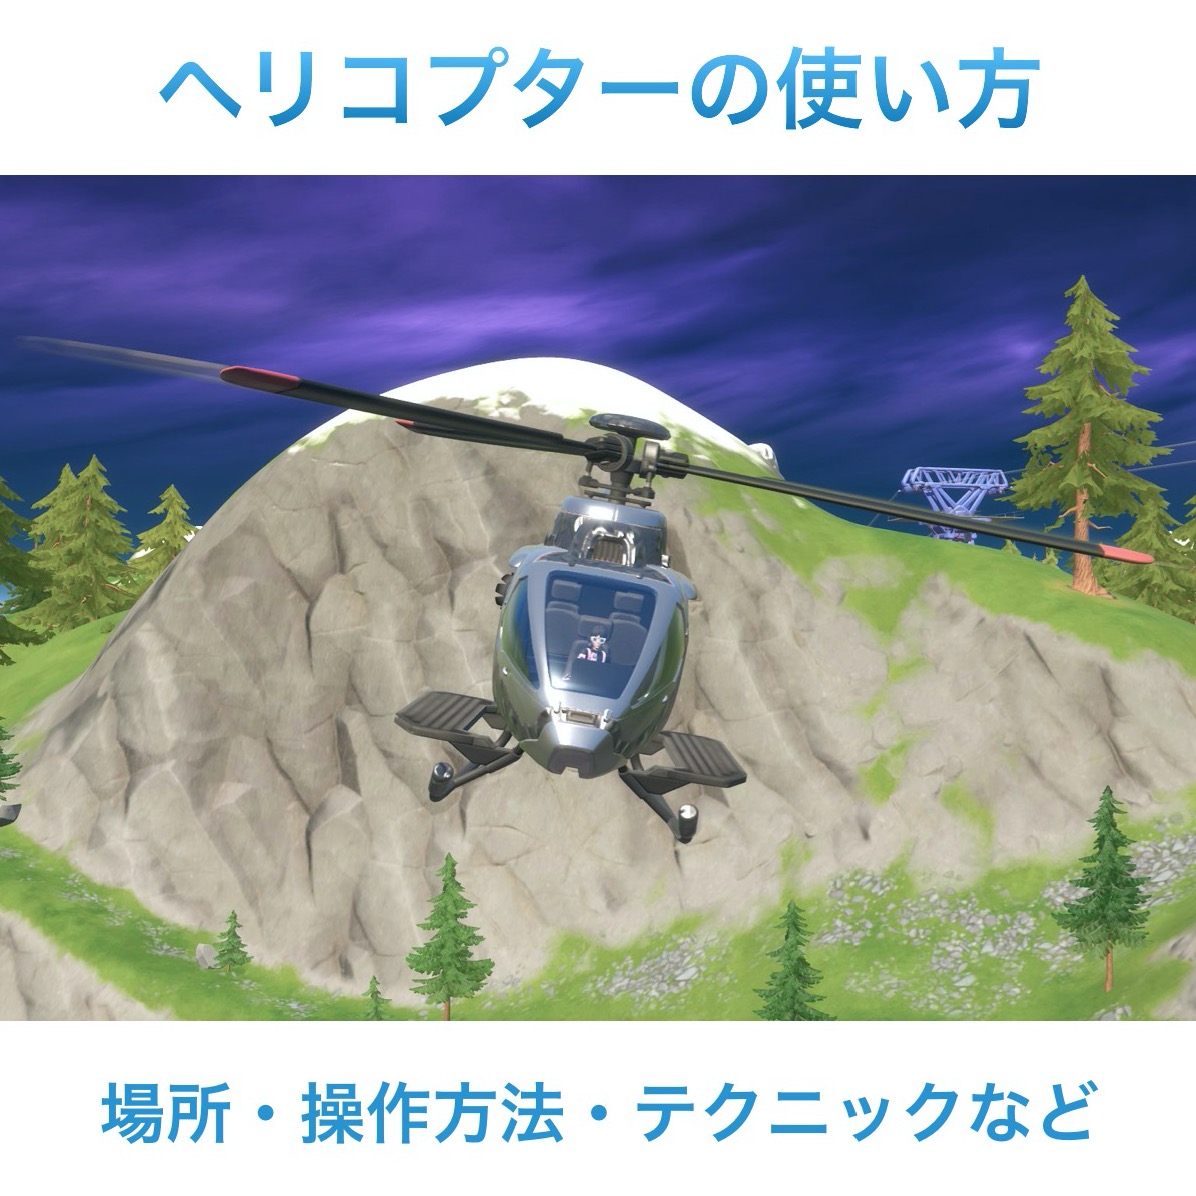 【フォートナイト】ヘリコプターの場所・操作方法・操縦のコツ